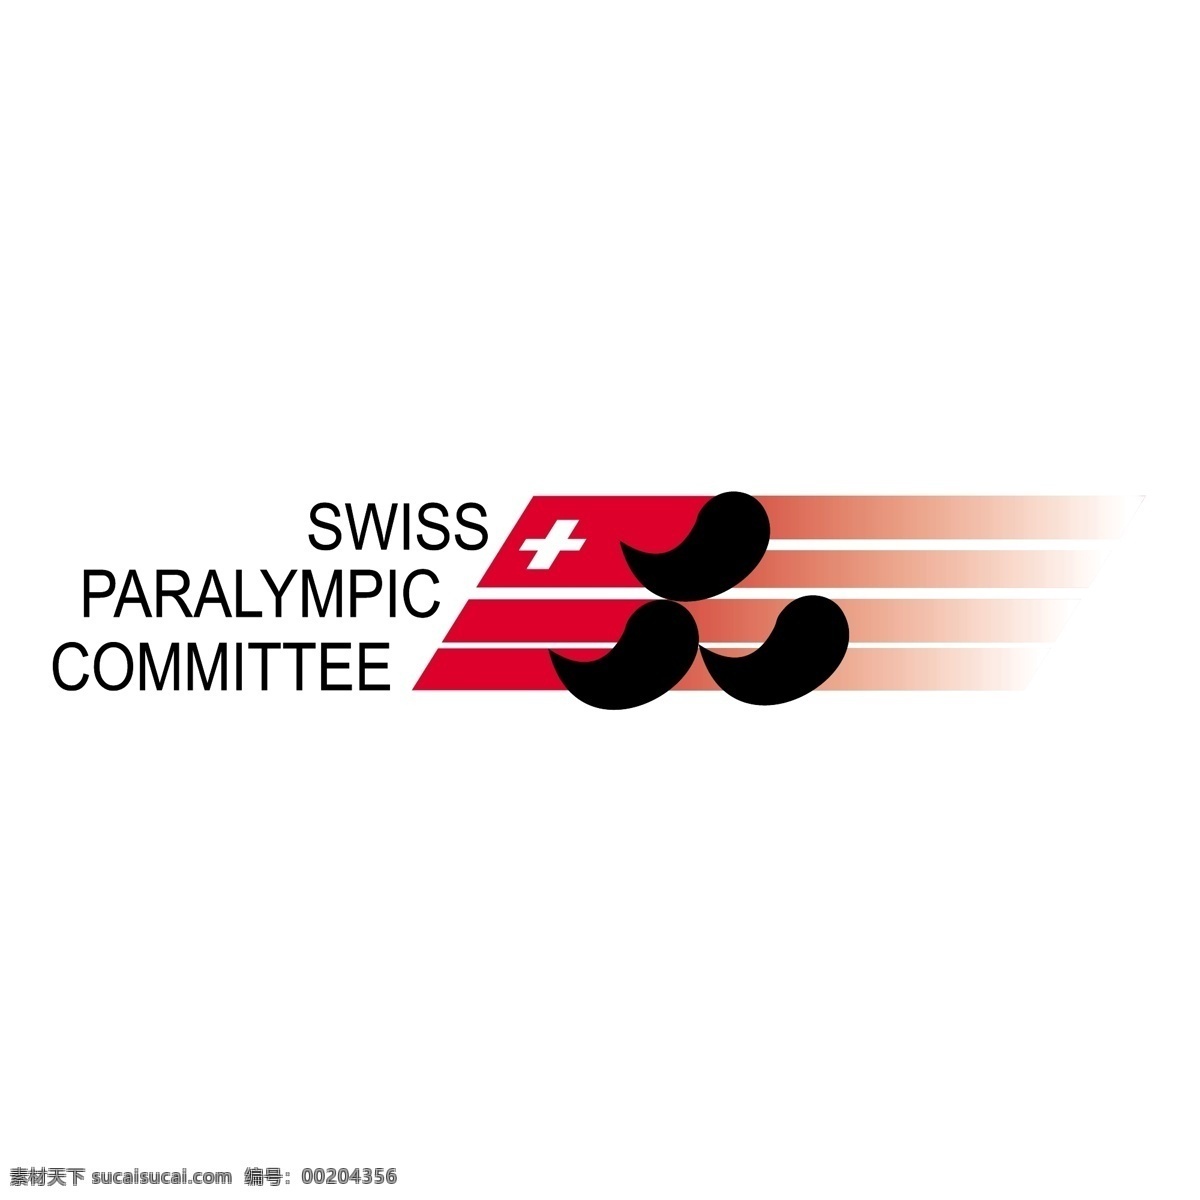 瑞士 奥林匹克 委员会 免费 残奥会 标志 标识 psd源文件 logo设计